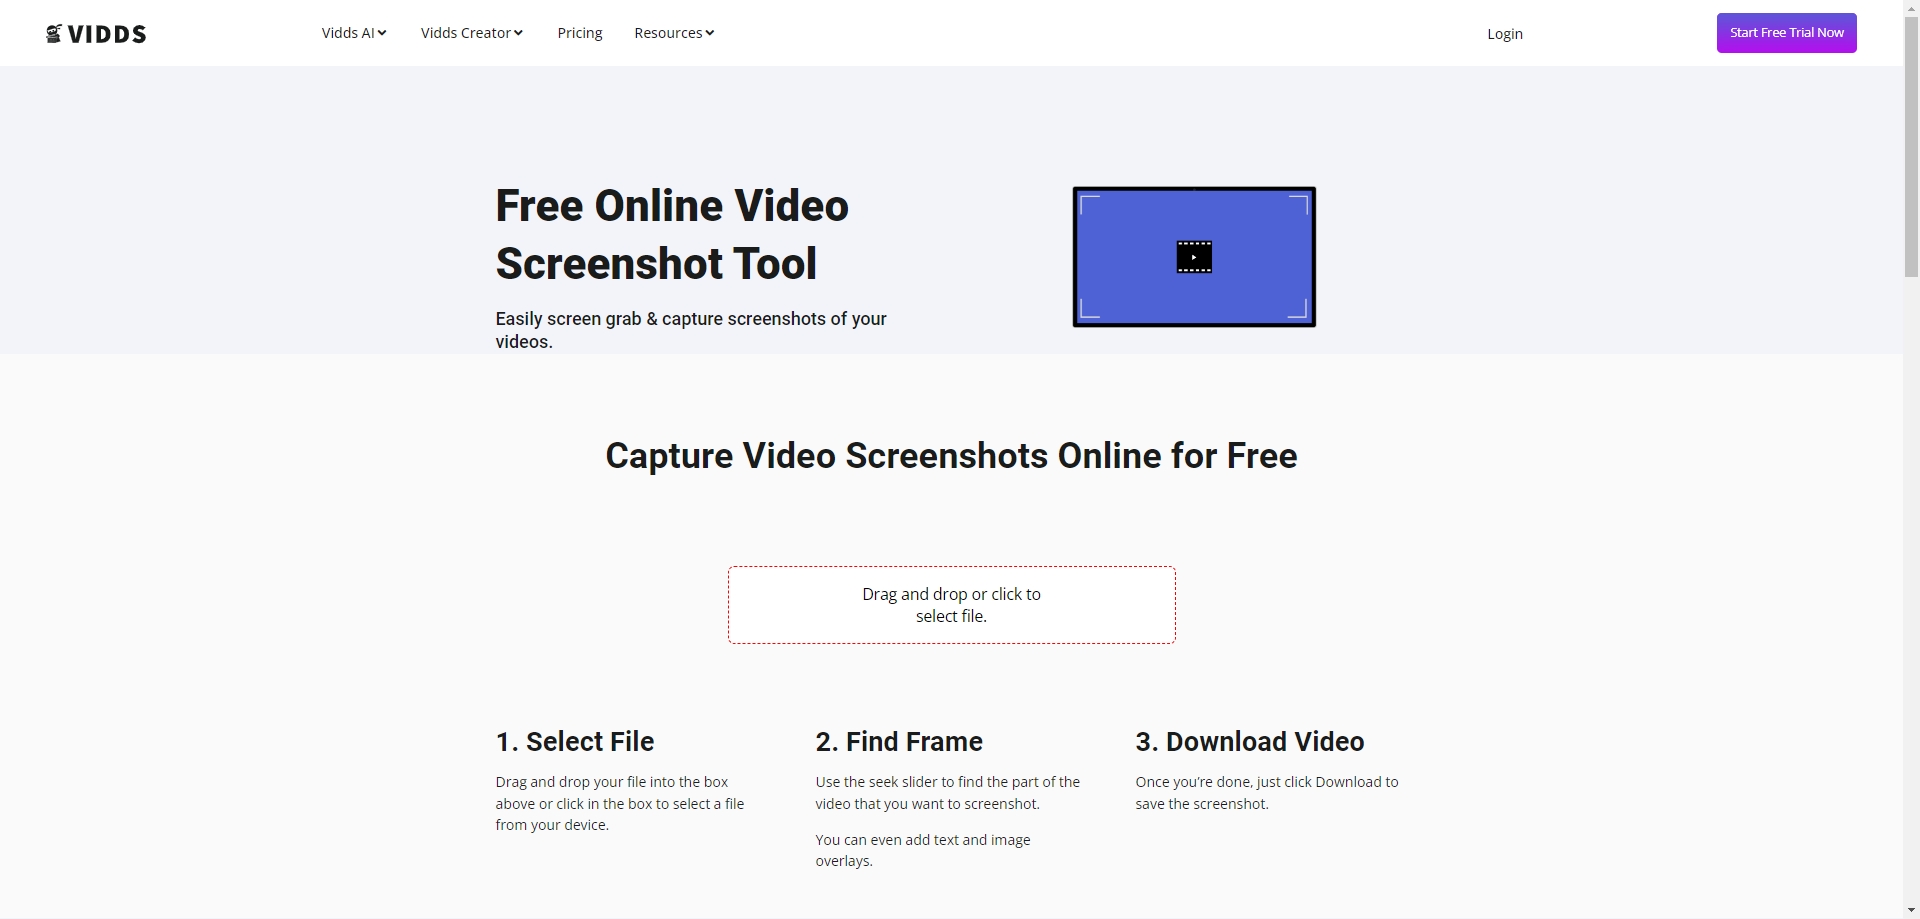 Outil de capture d'écran vidéo en ligne gratuit Vidds